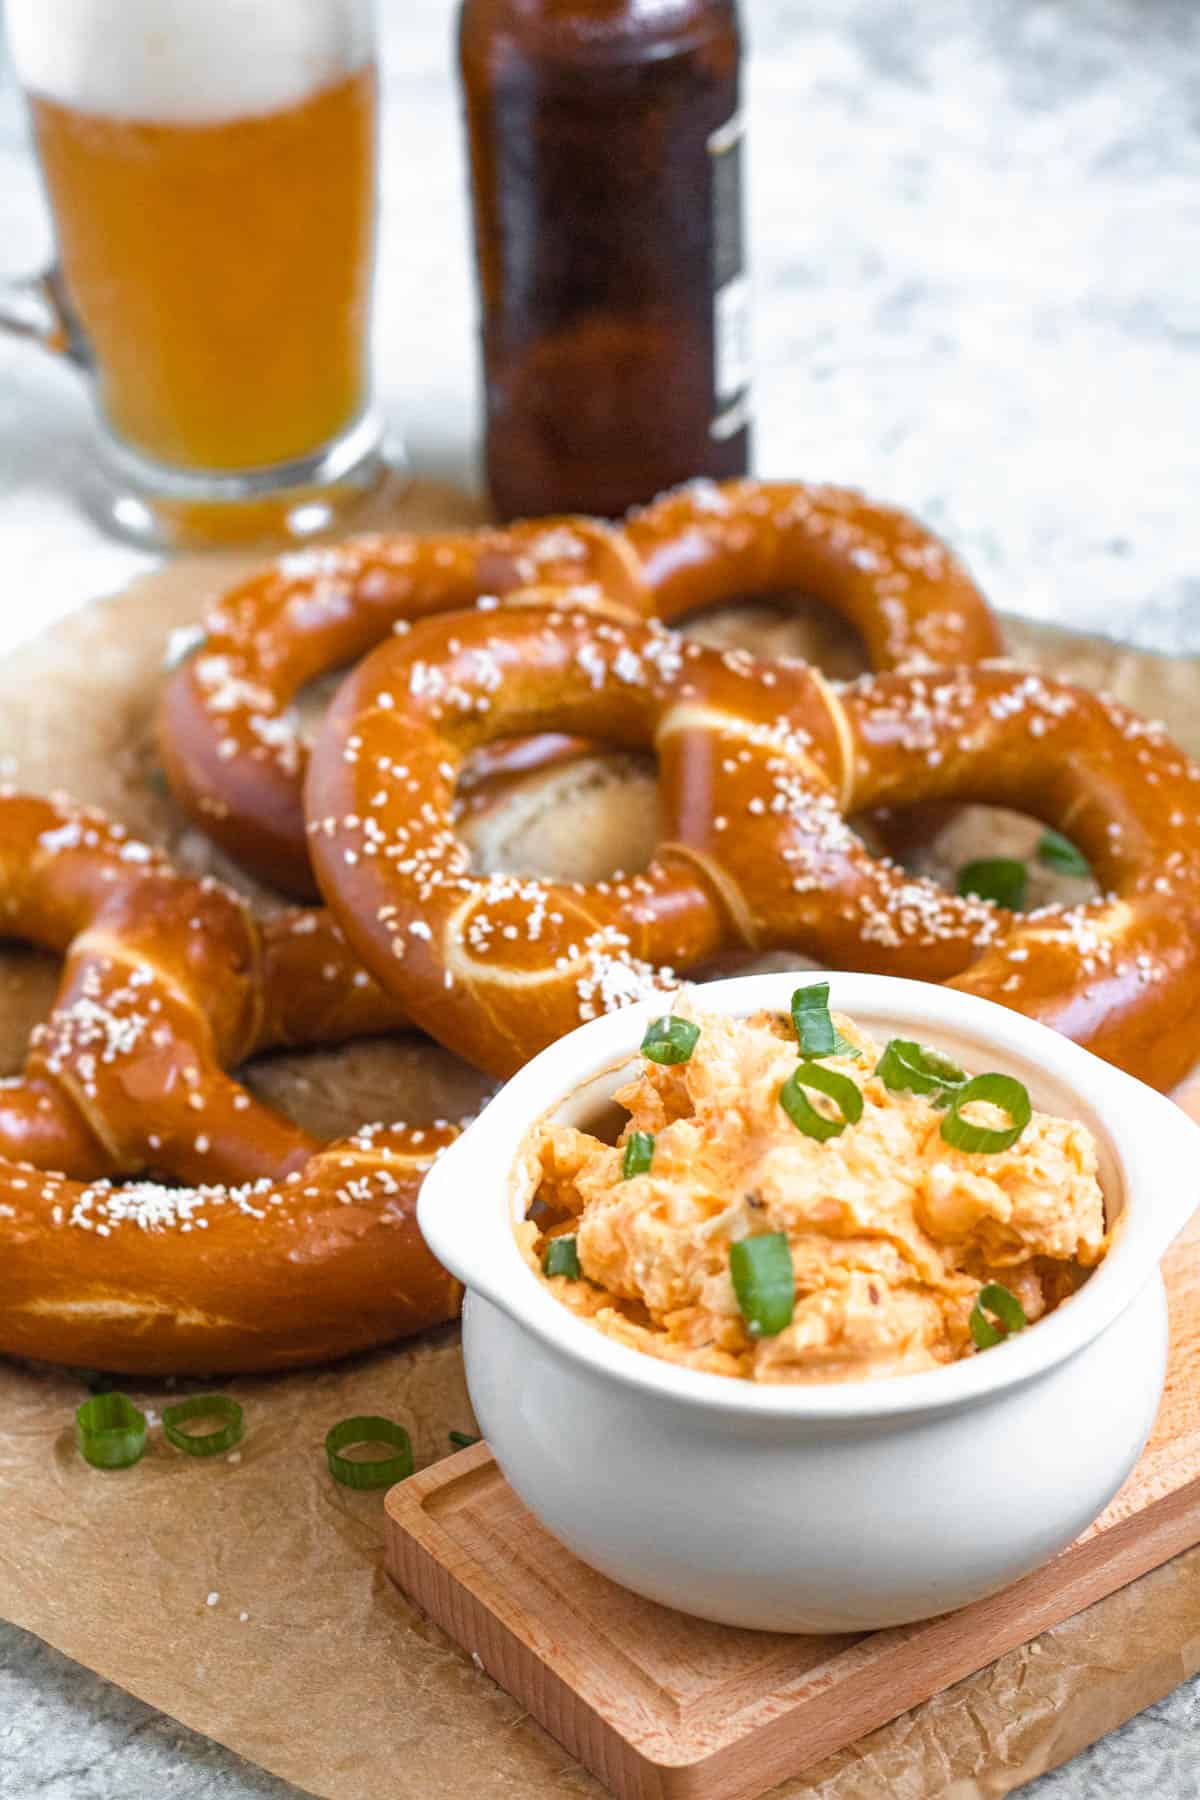 German Obatzda in a serving platter sitting in front of German soft pretzels.